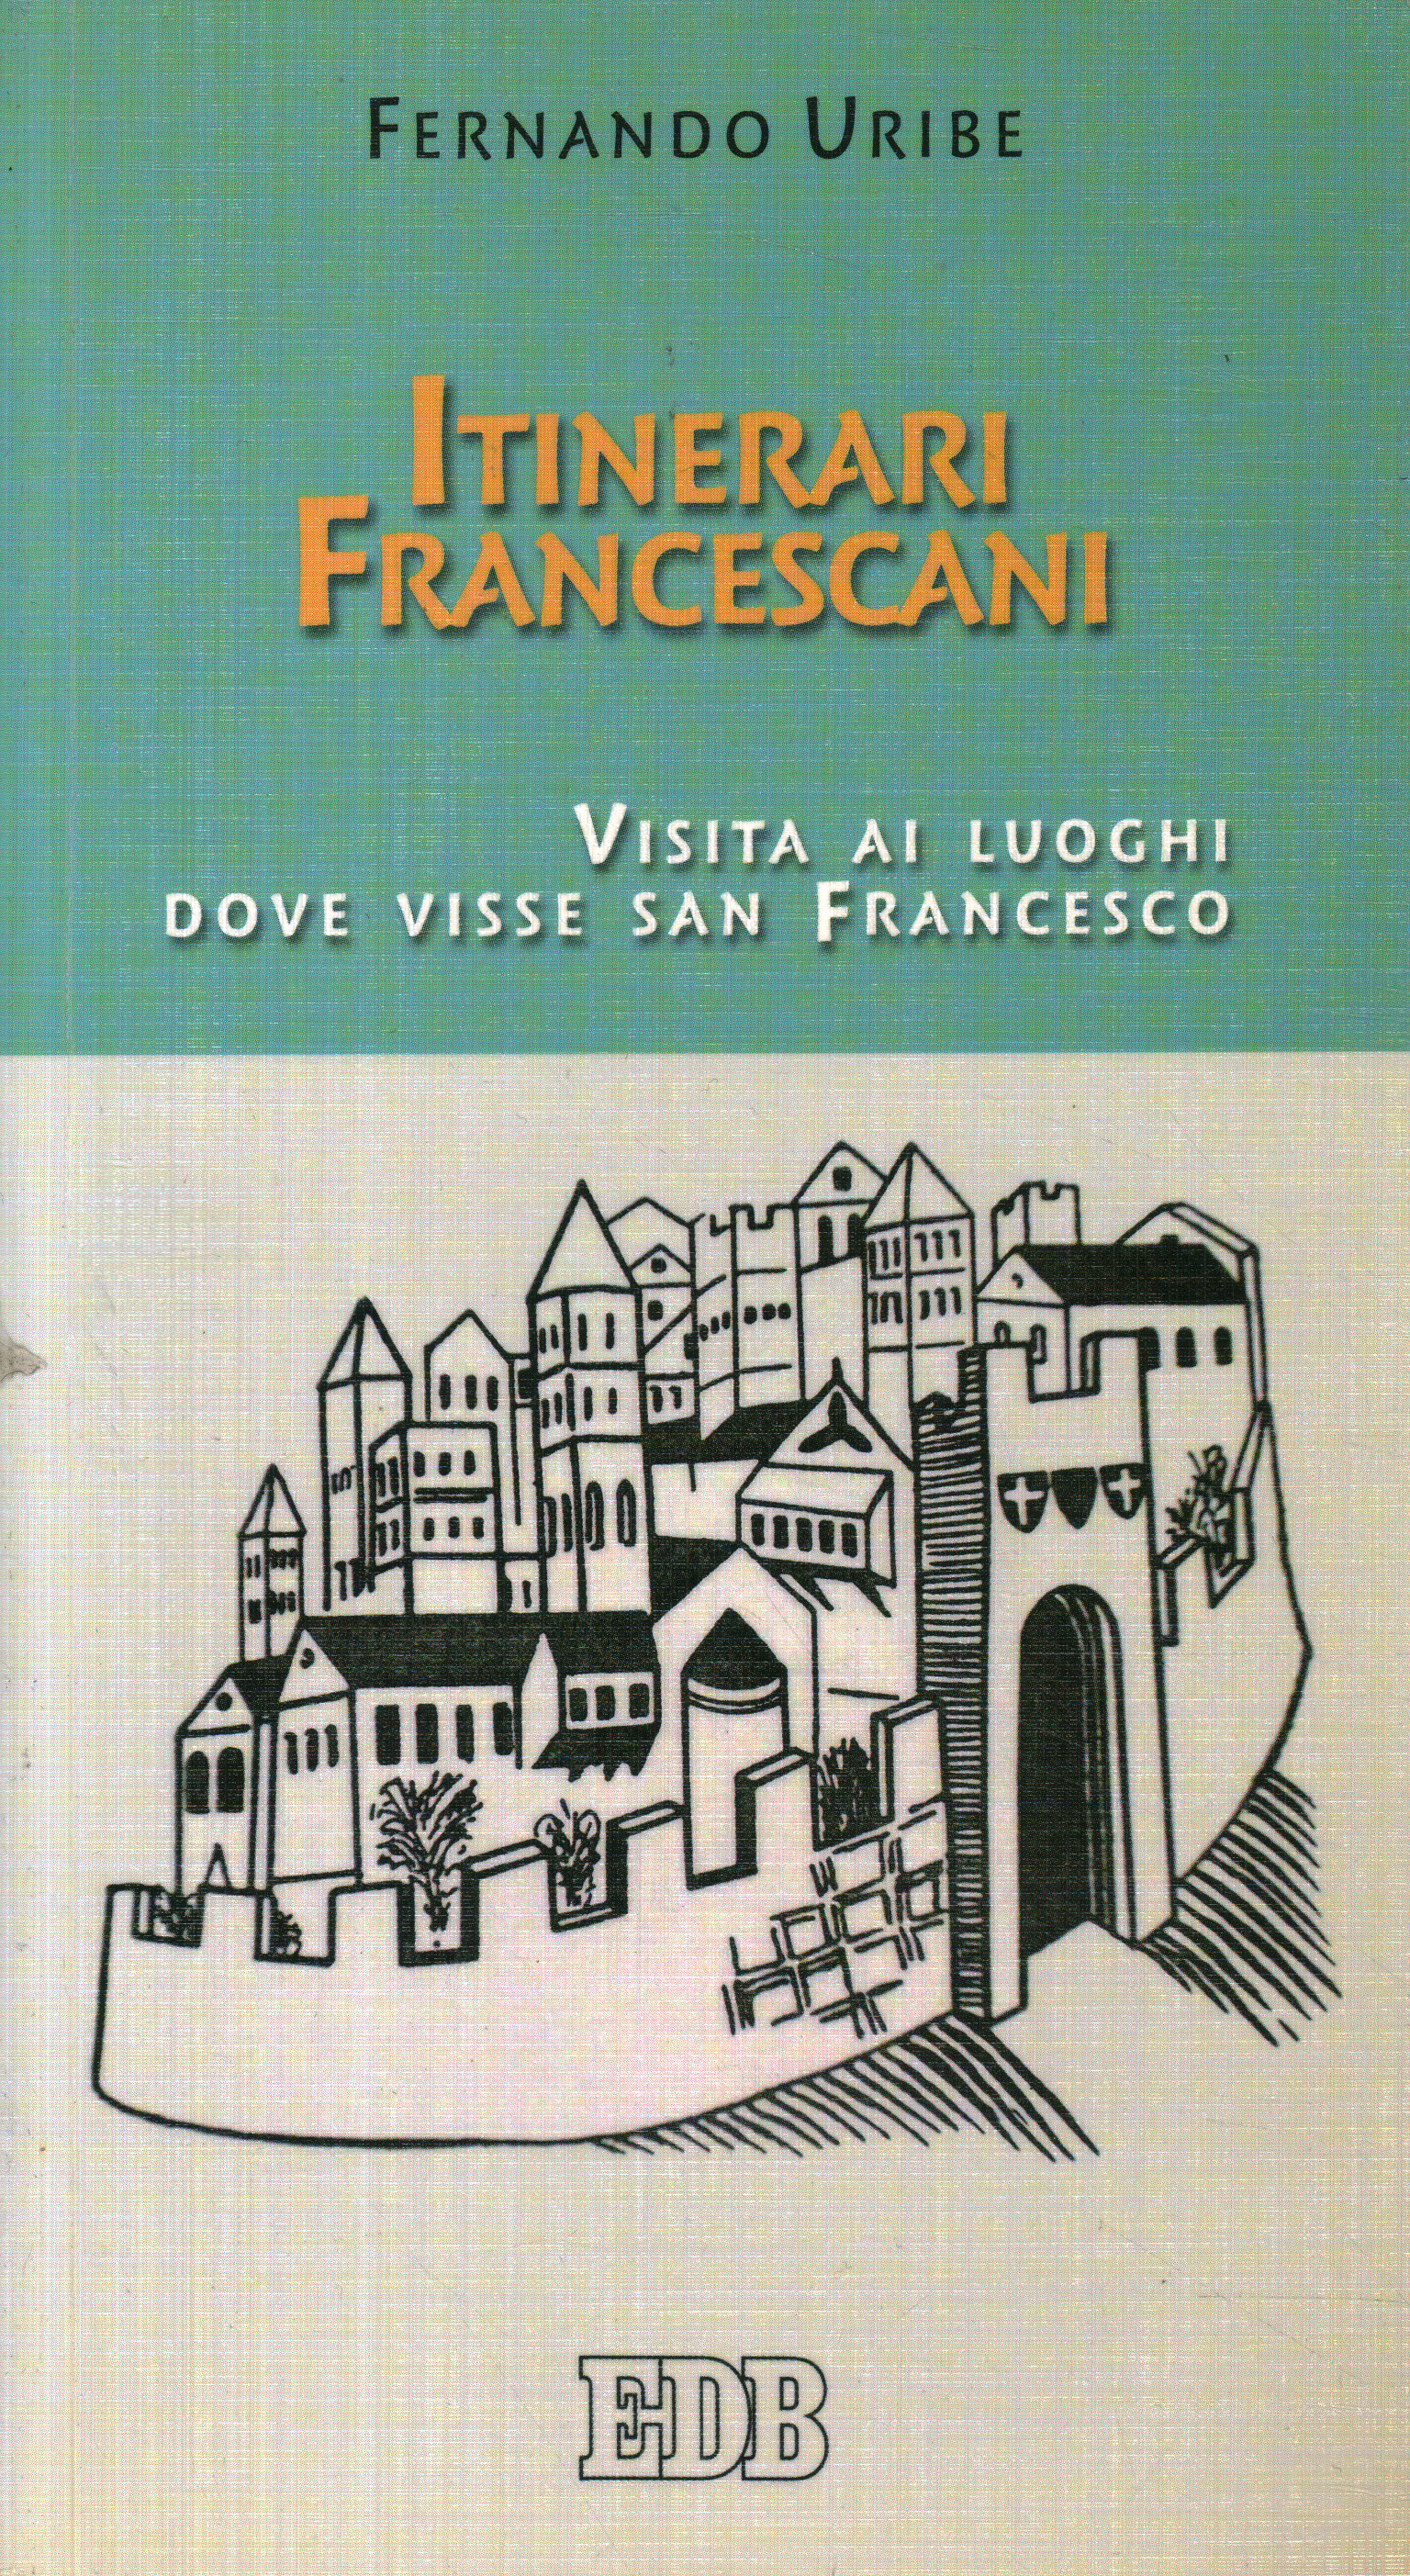 Franciscan itineraries